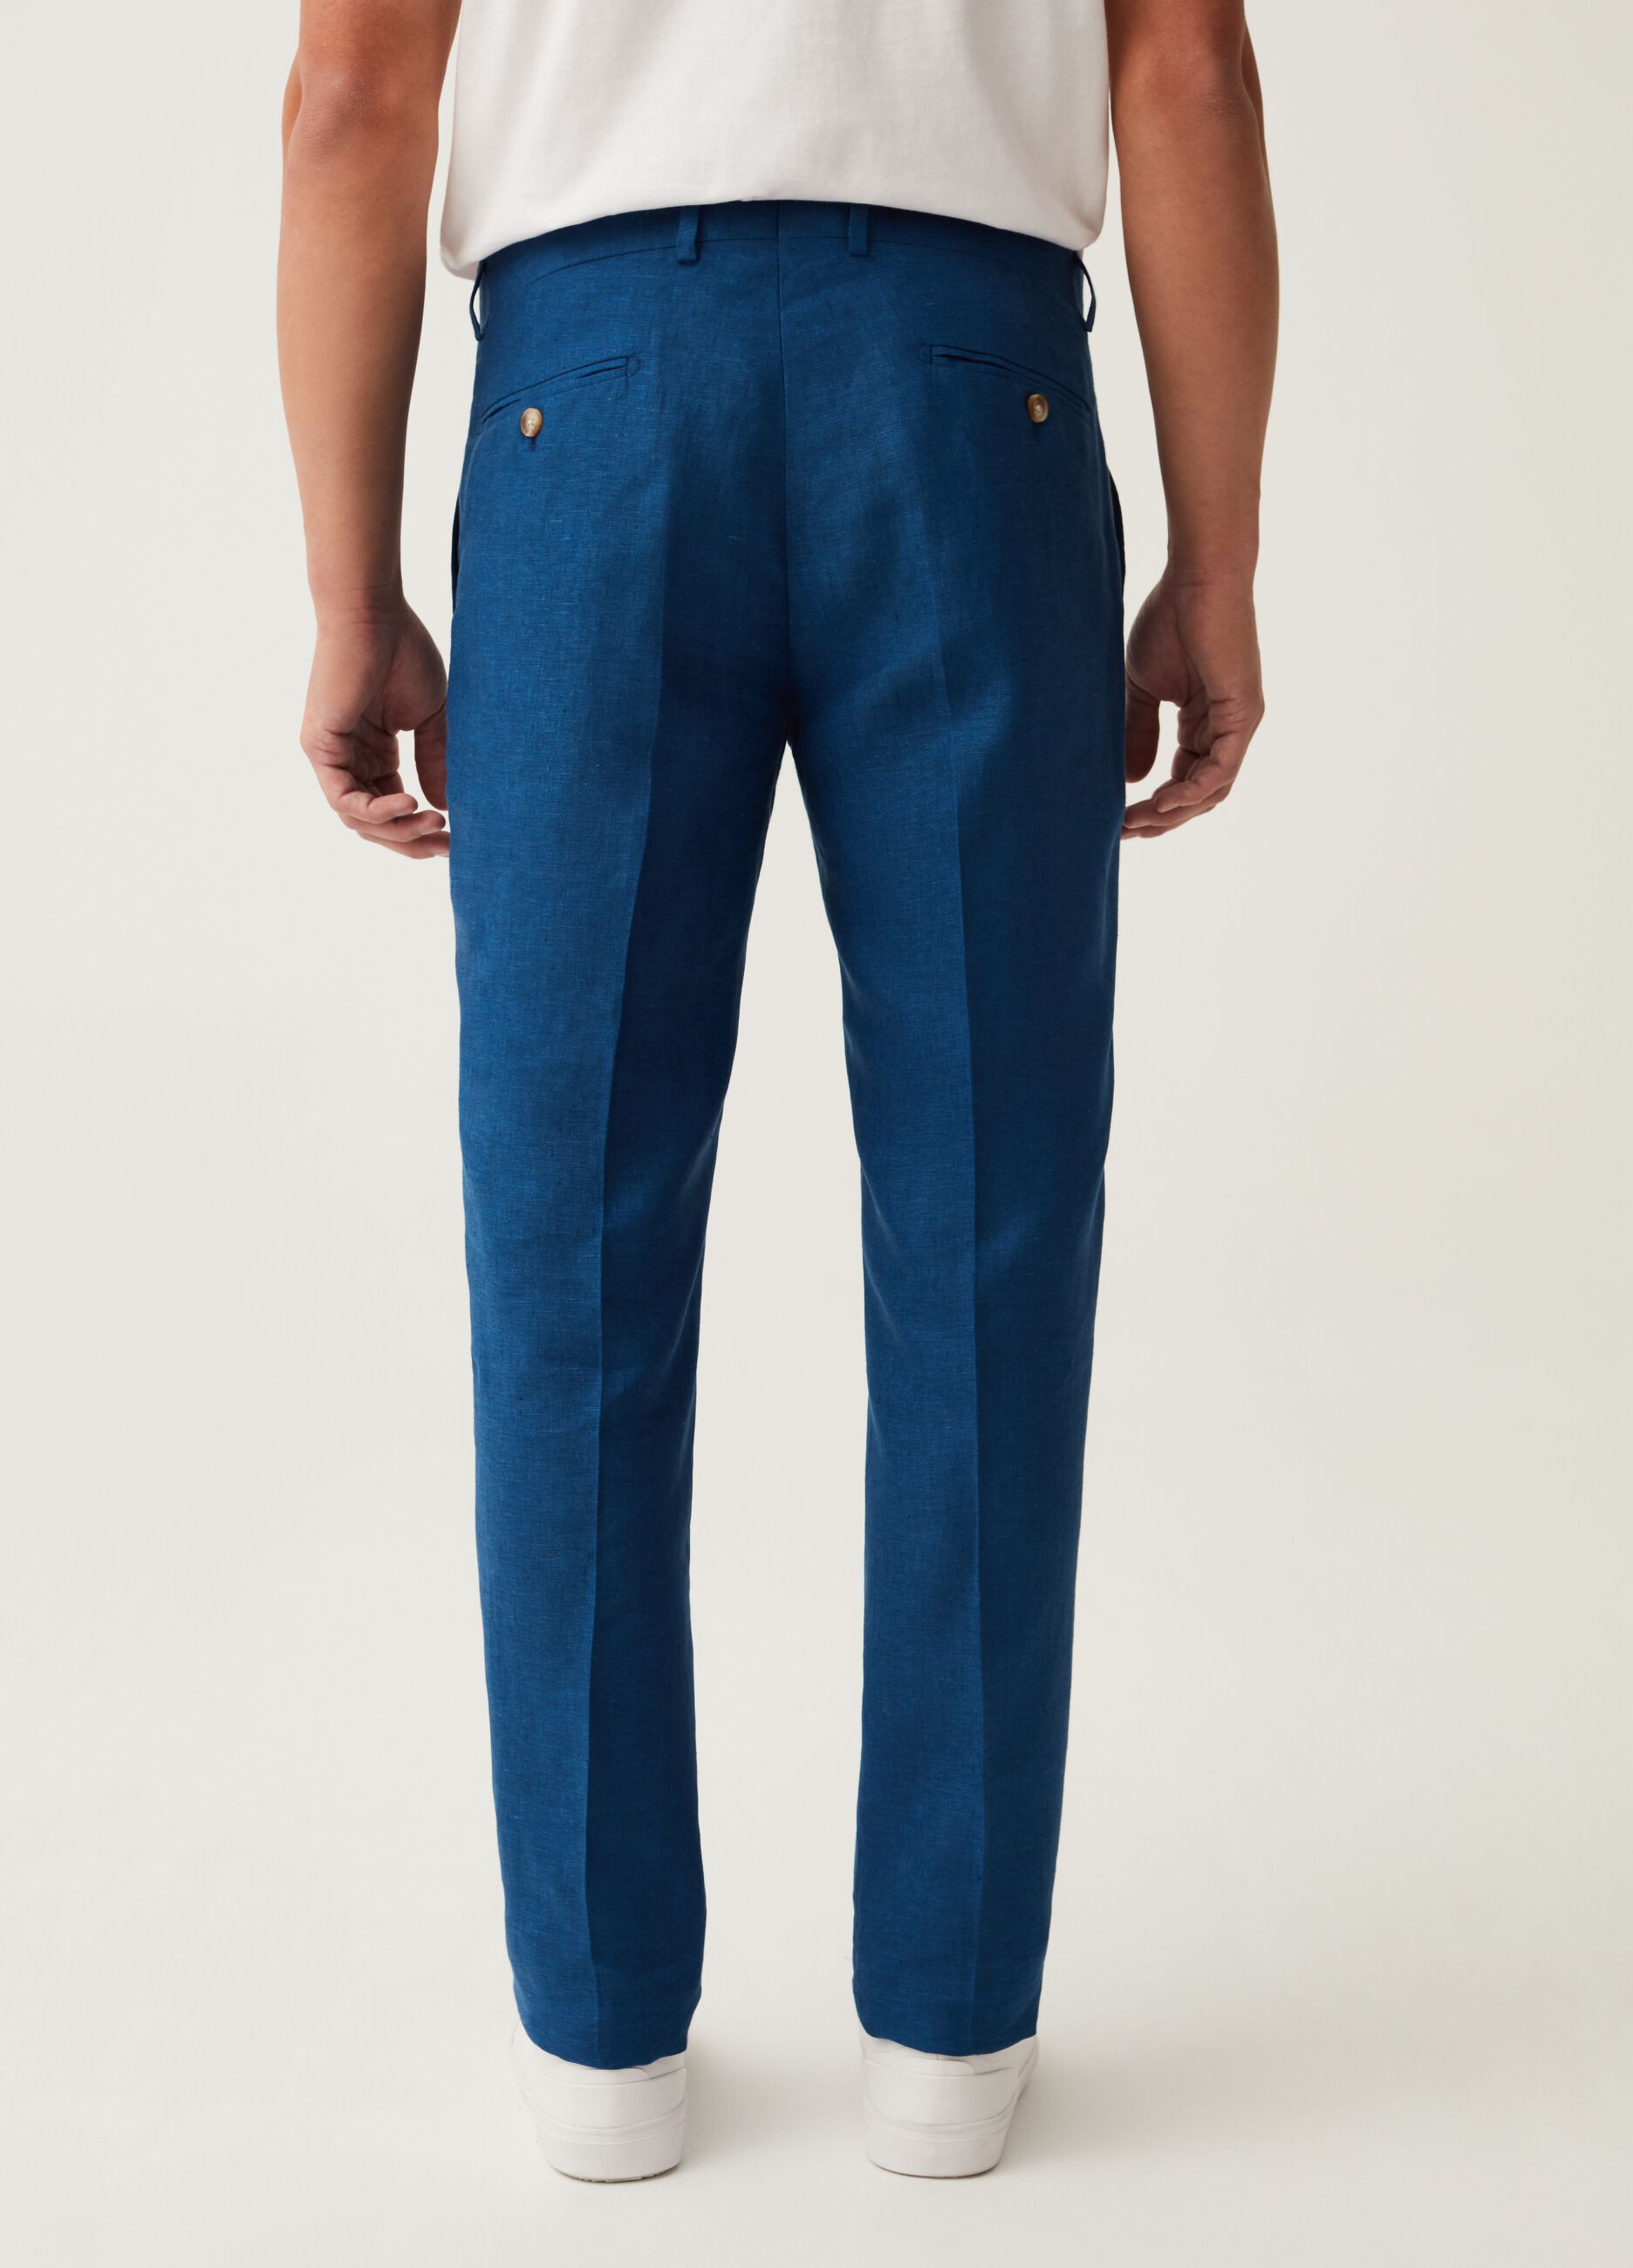 Pantalone slim fit in lino tinto filo bluette